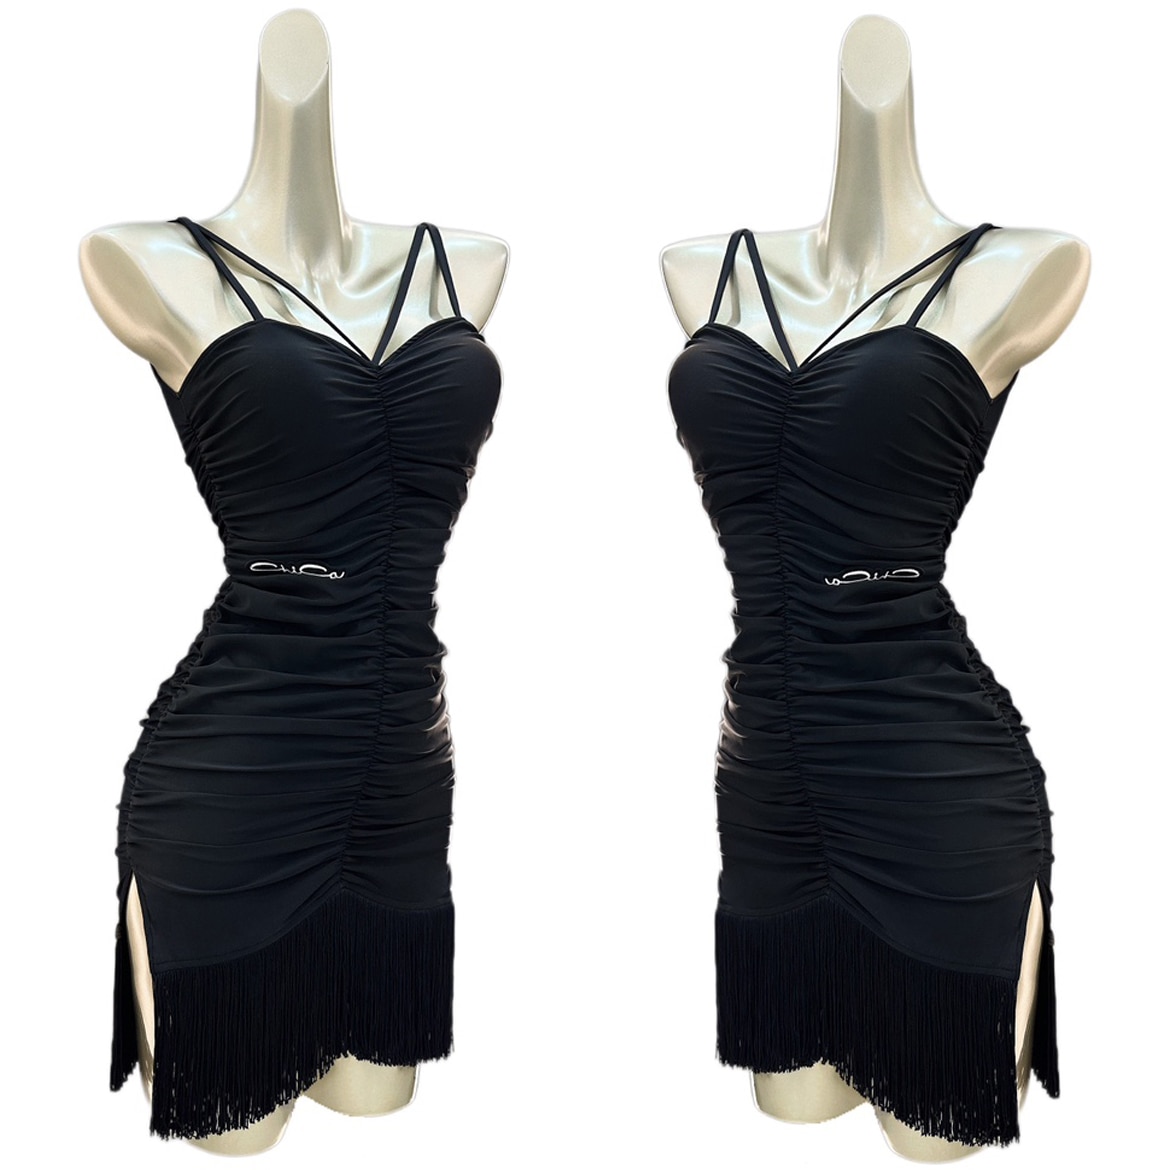 여성용 섹시한 드로스트링 블랙 프린저 드레스, 성인 룸바 댄스 의류, 클럽 살사 연습 드레스, DNV18404, 여름 라틴 댄스 드레스